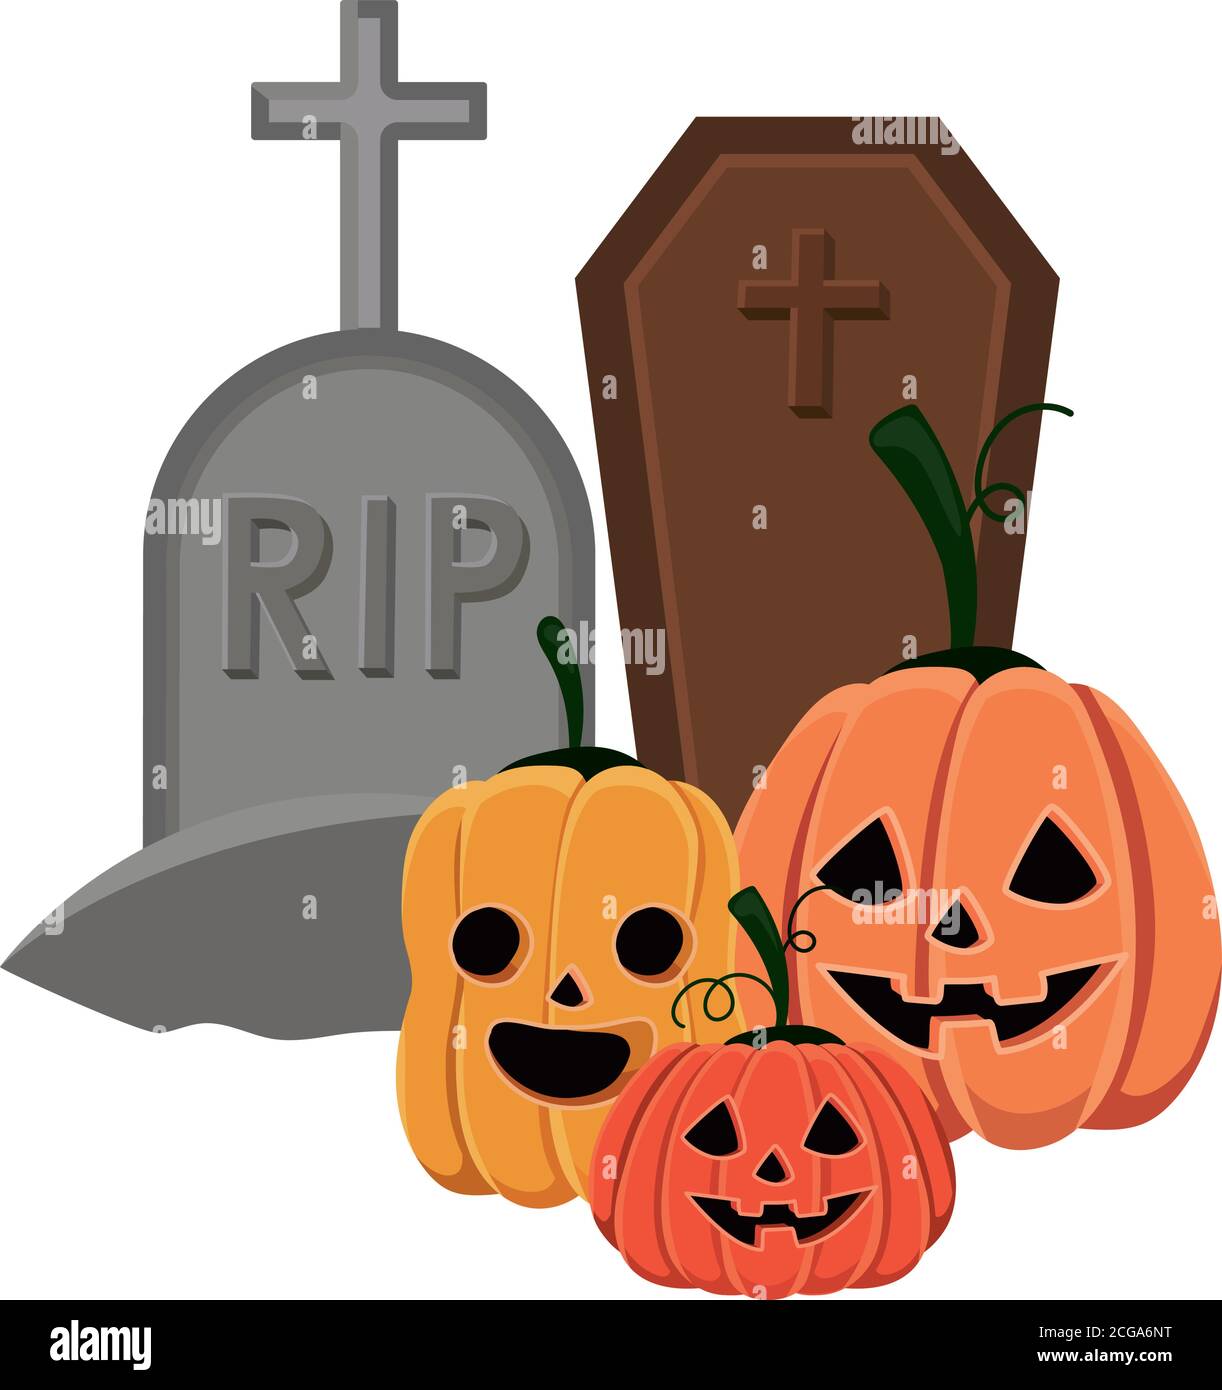 Halloween pumpkins cartoons with graves vector design Stock Vector